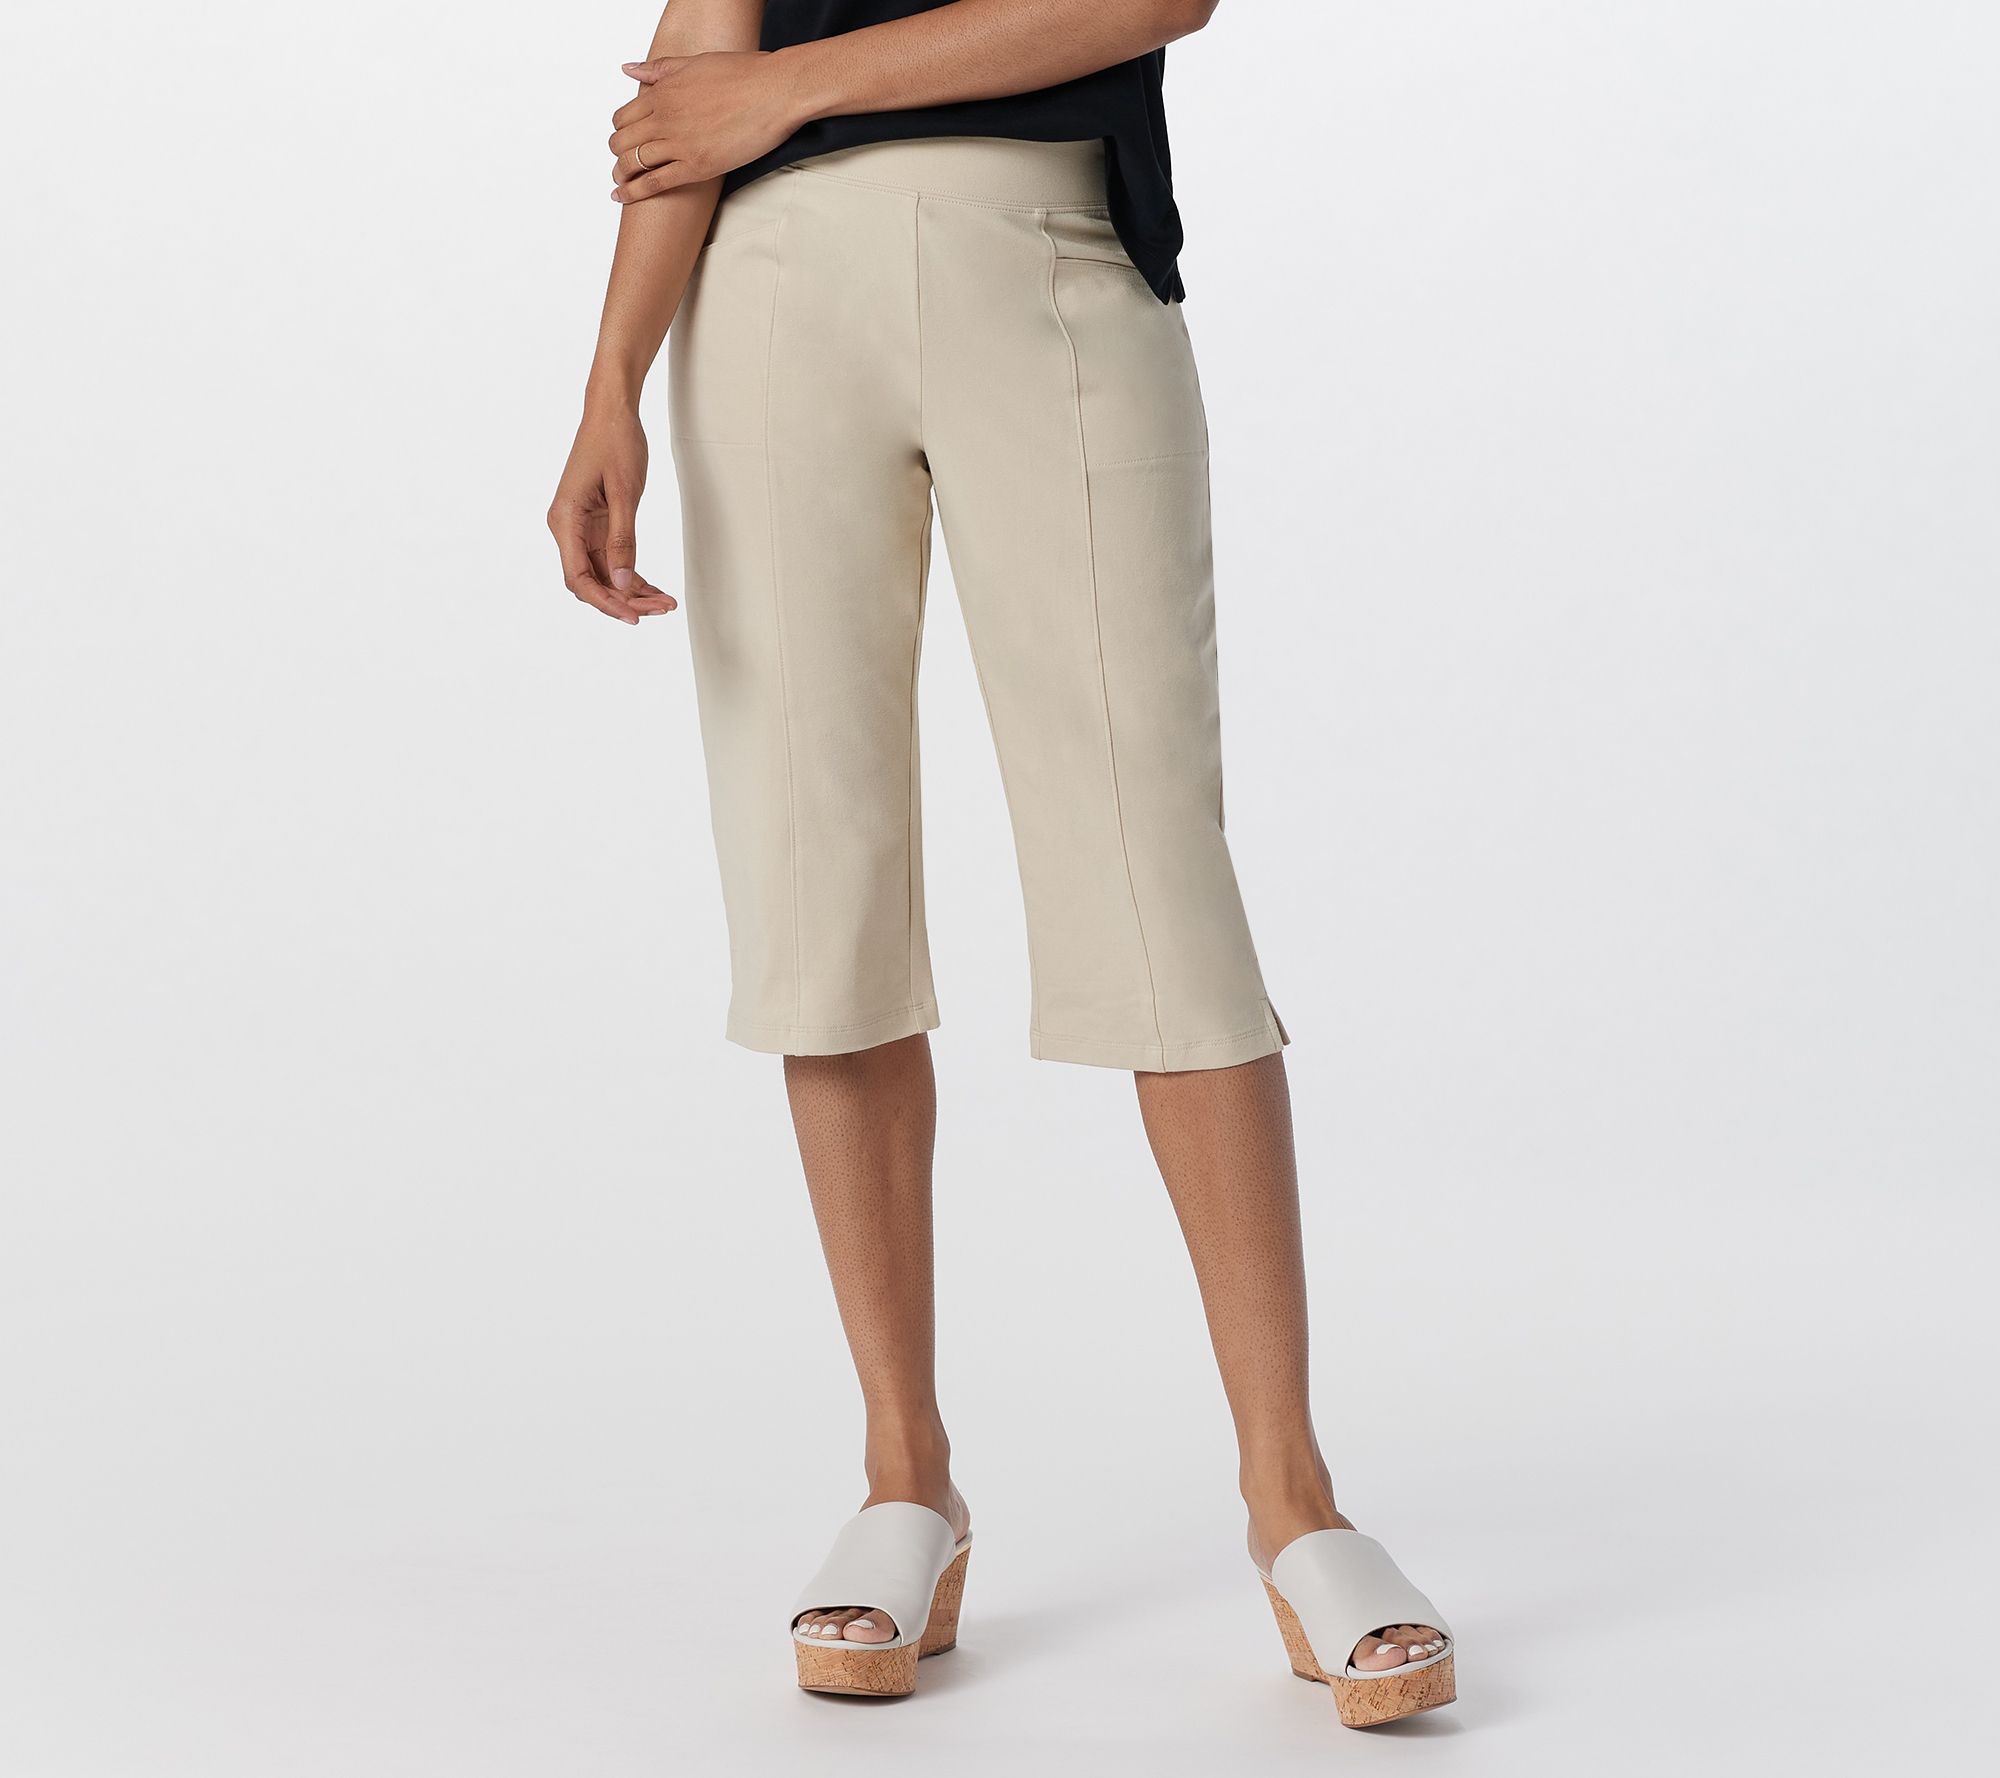 Denim & Co. Original Waist Stretch Capri Pants with Side Pockets - QVC.com